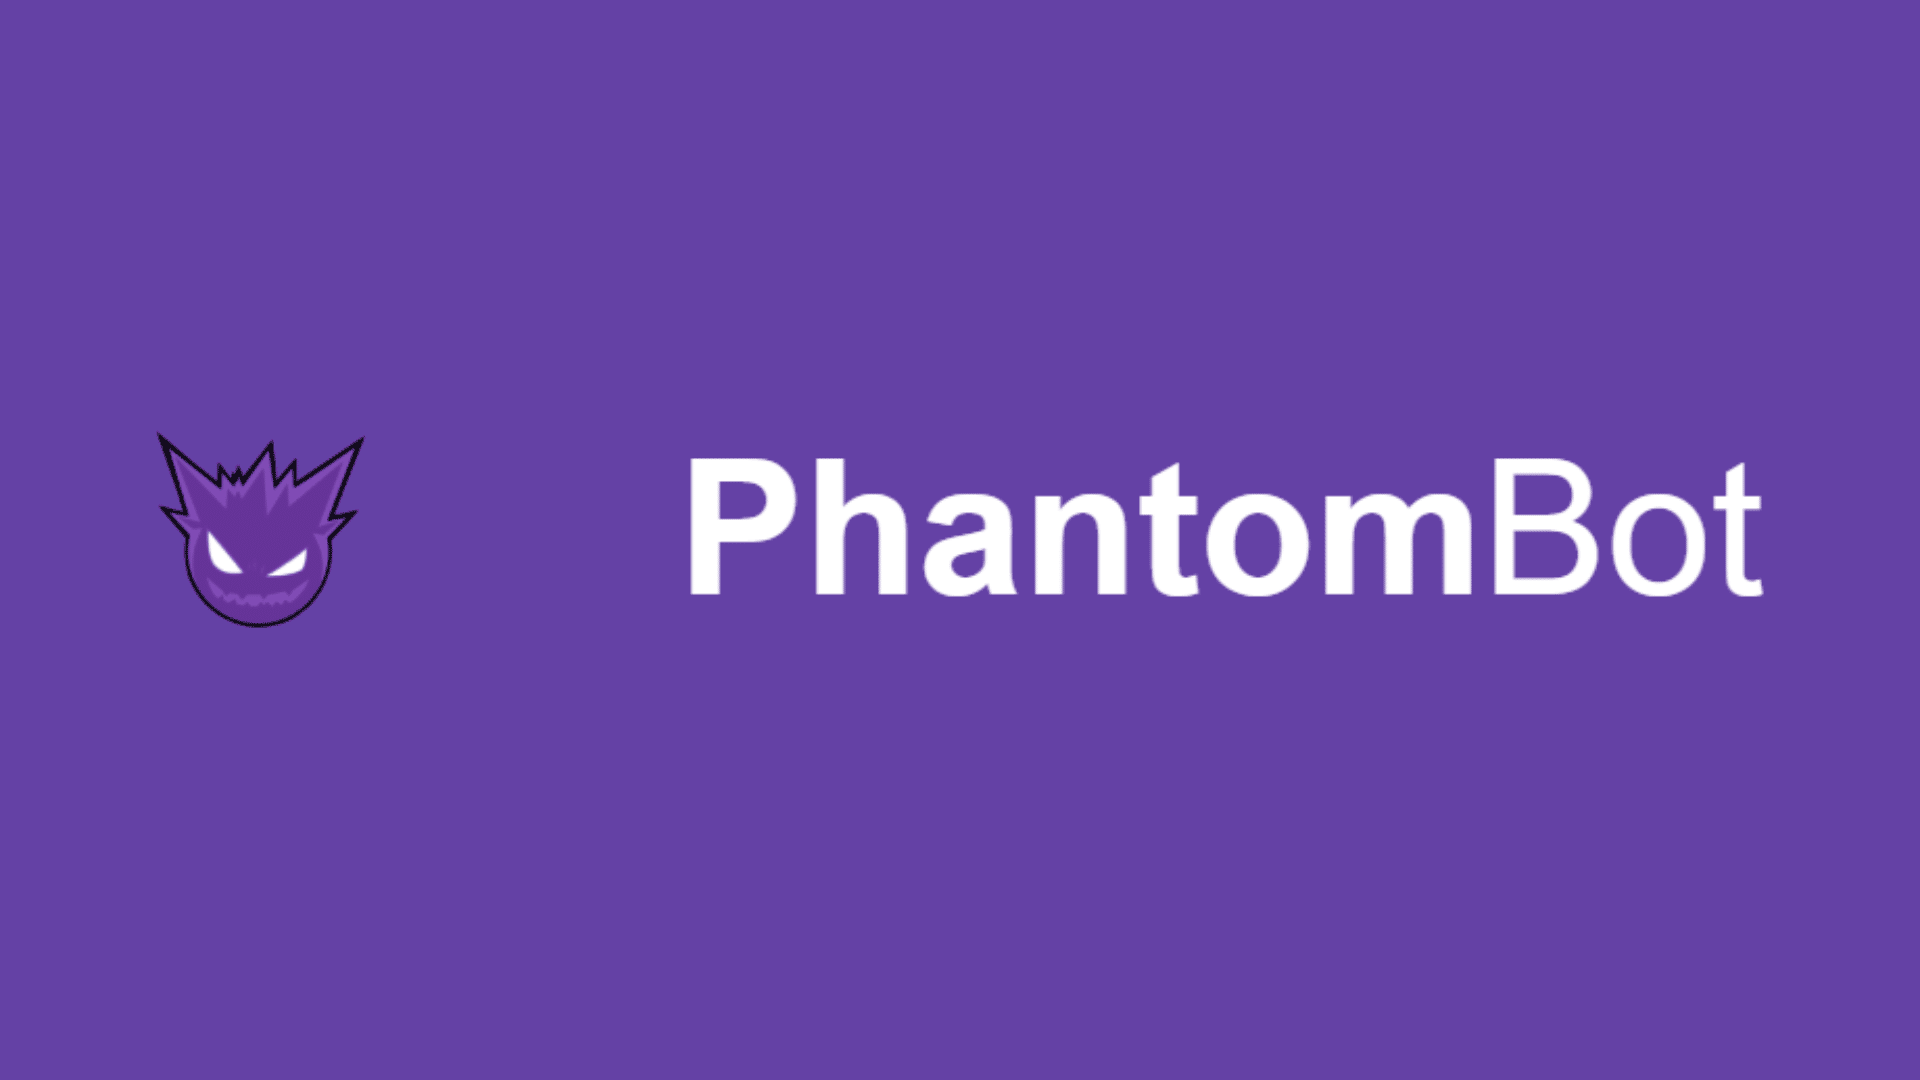 PhantomBot